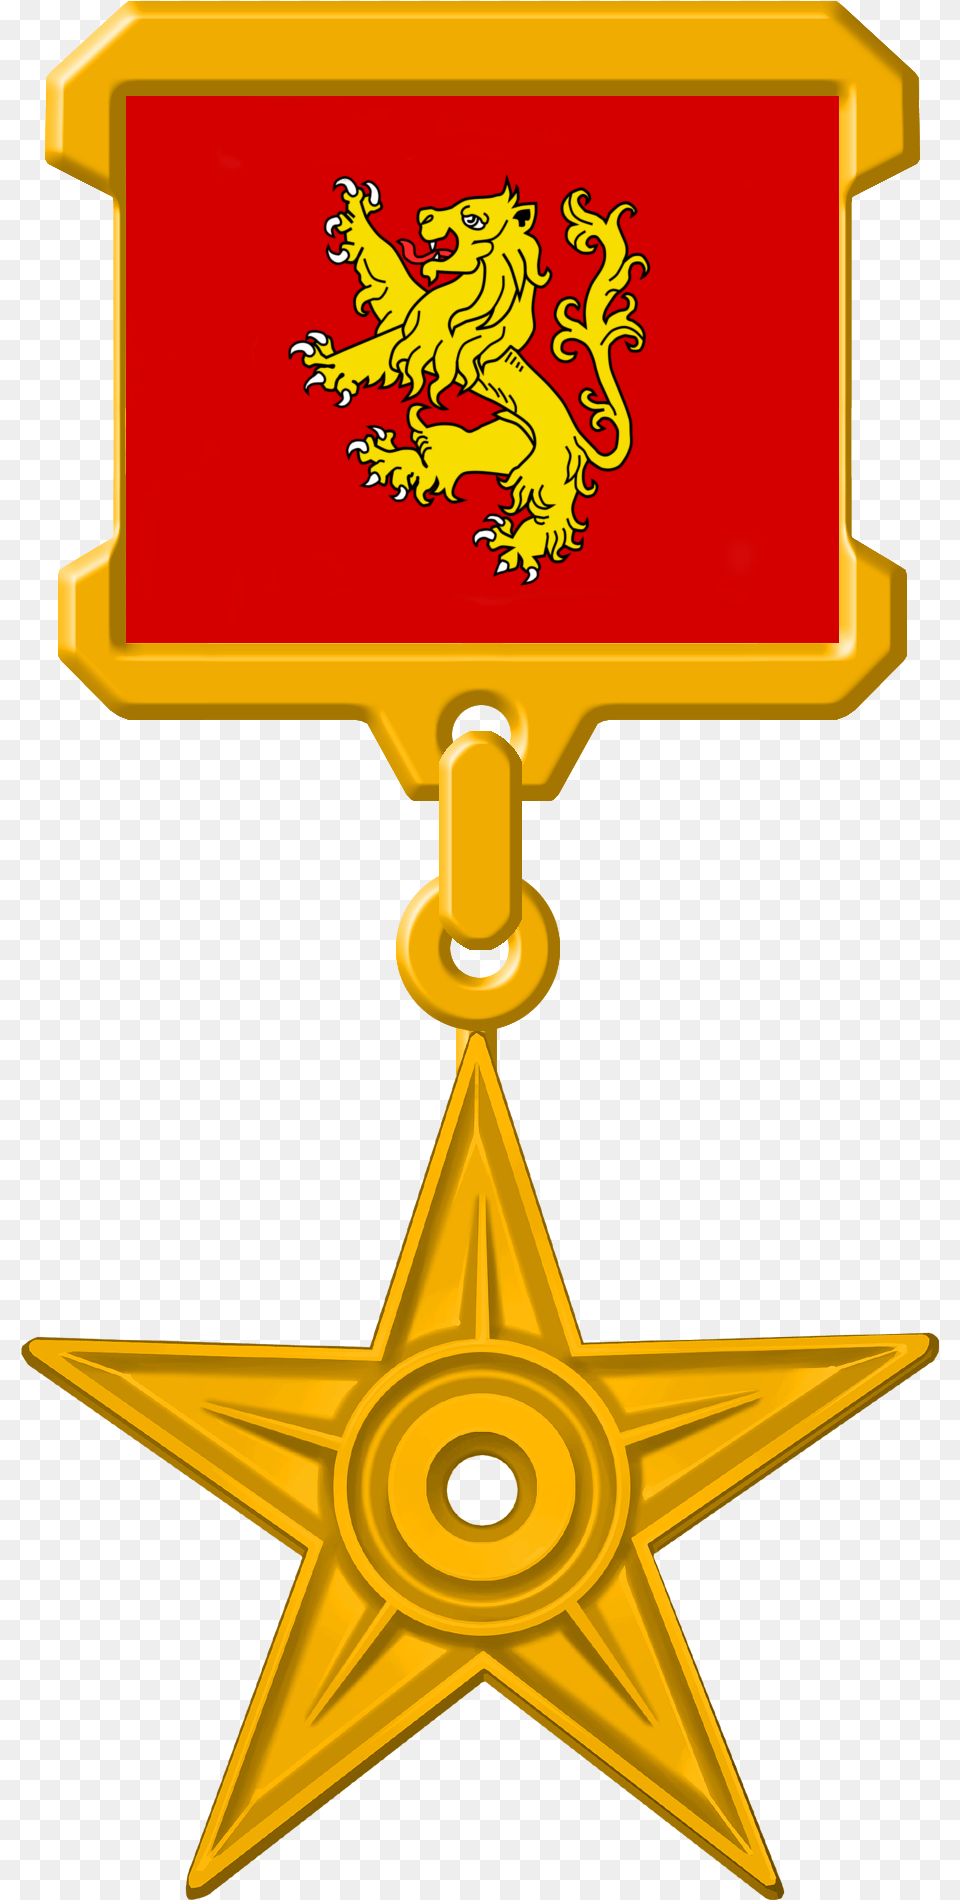 Got Lannister Gold Medal Communism, Symbol, Emblem, Cross Png Image